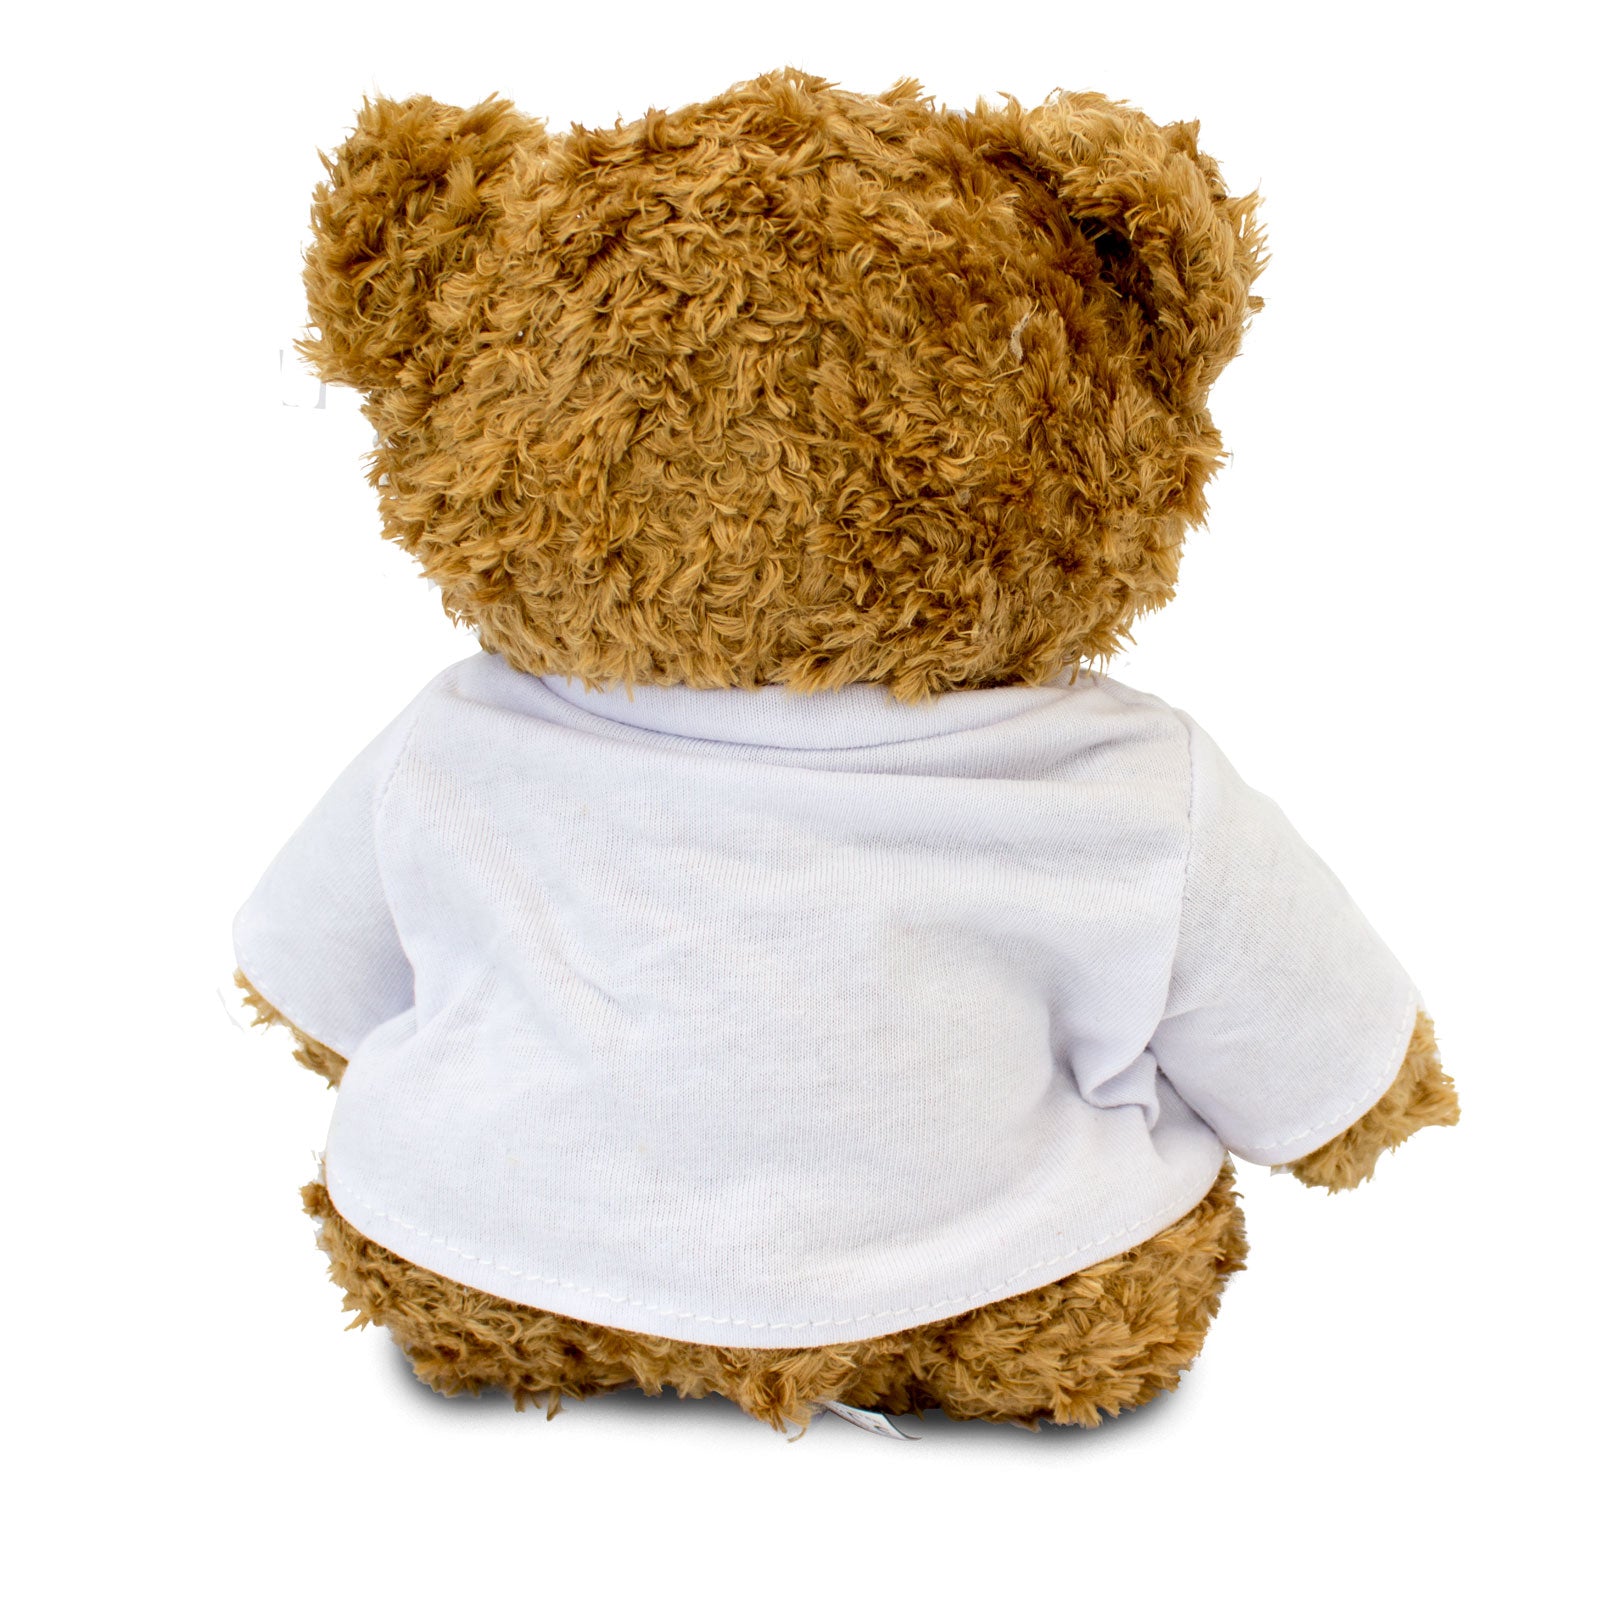 Get Well Soon Don - Teddy Bear